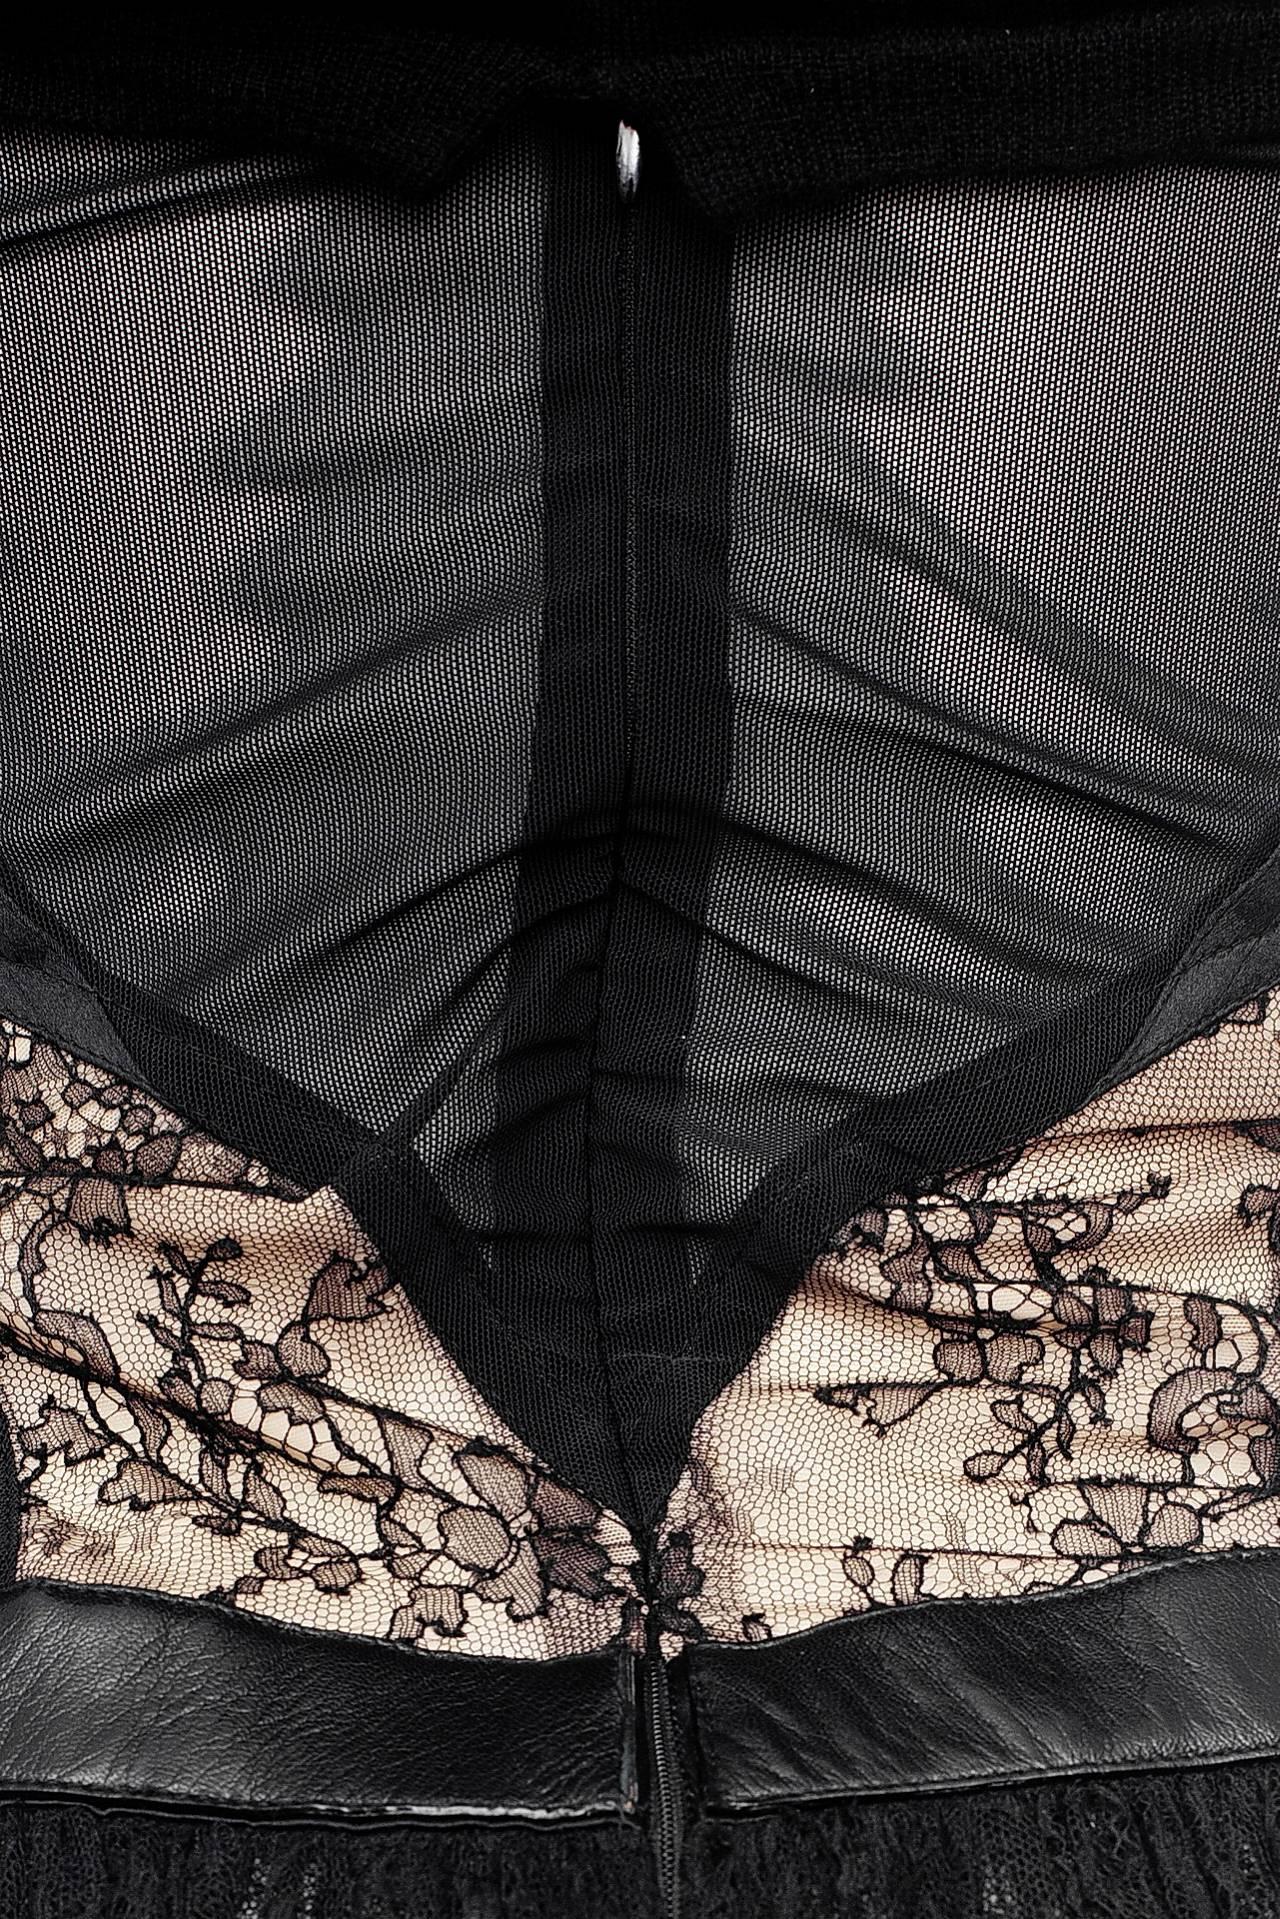 vintage black lace dress